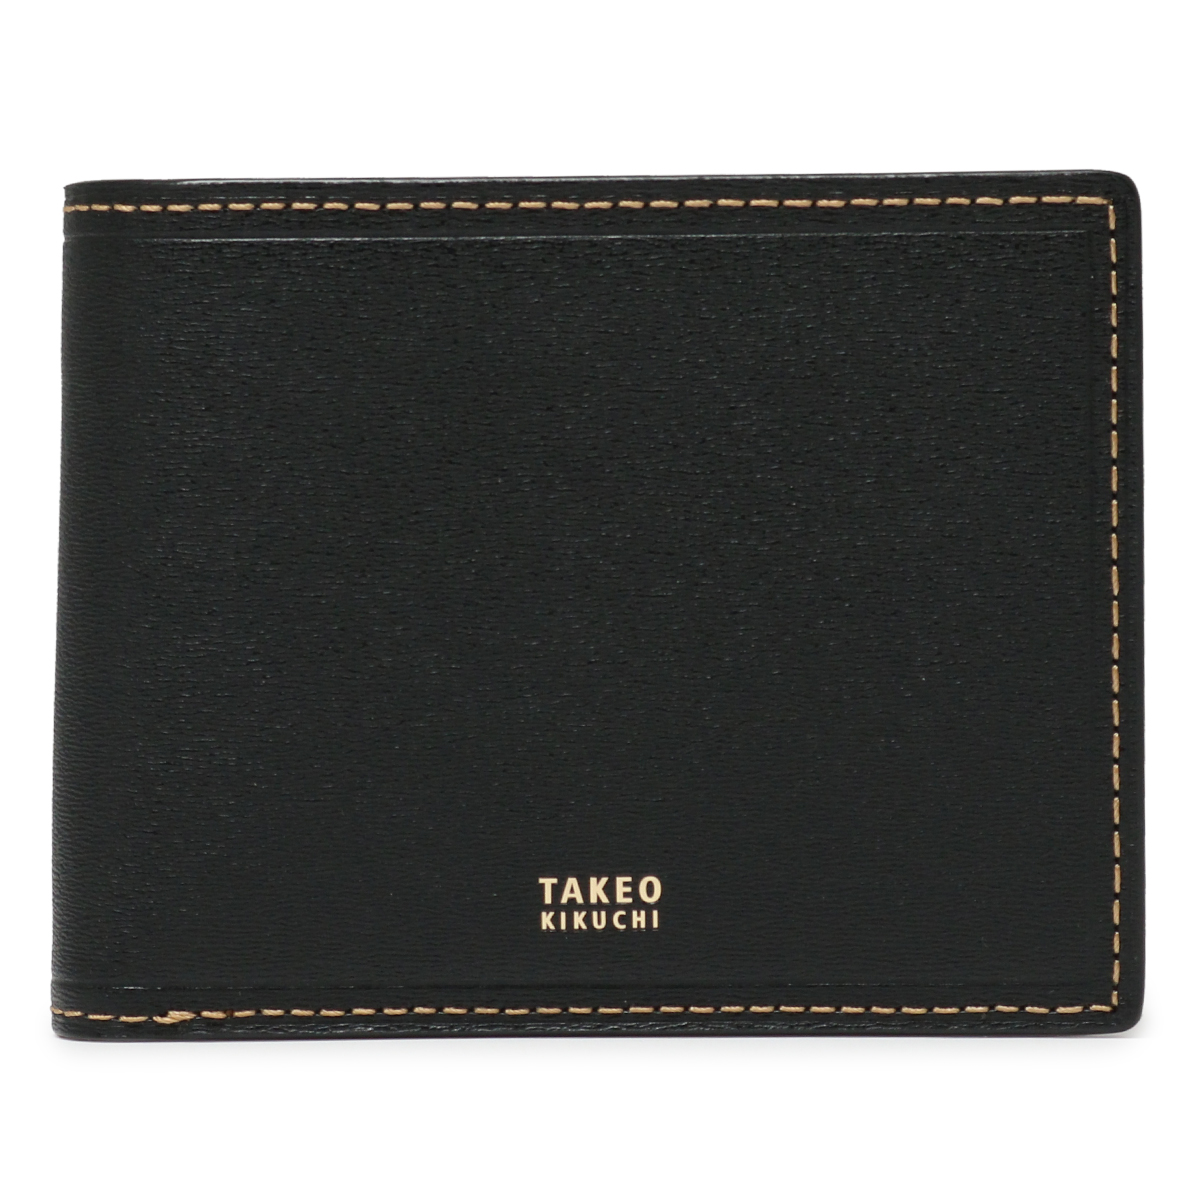 タケオキクチ 財布 二つ折り 本革 メンズ 728615 マックス TAKEO 